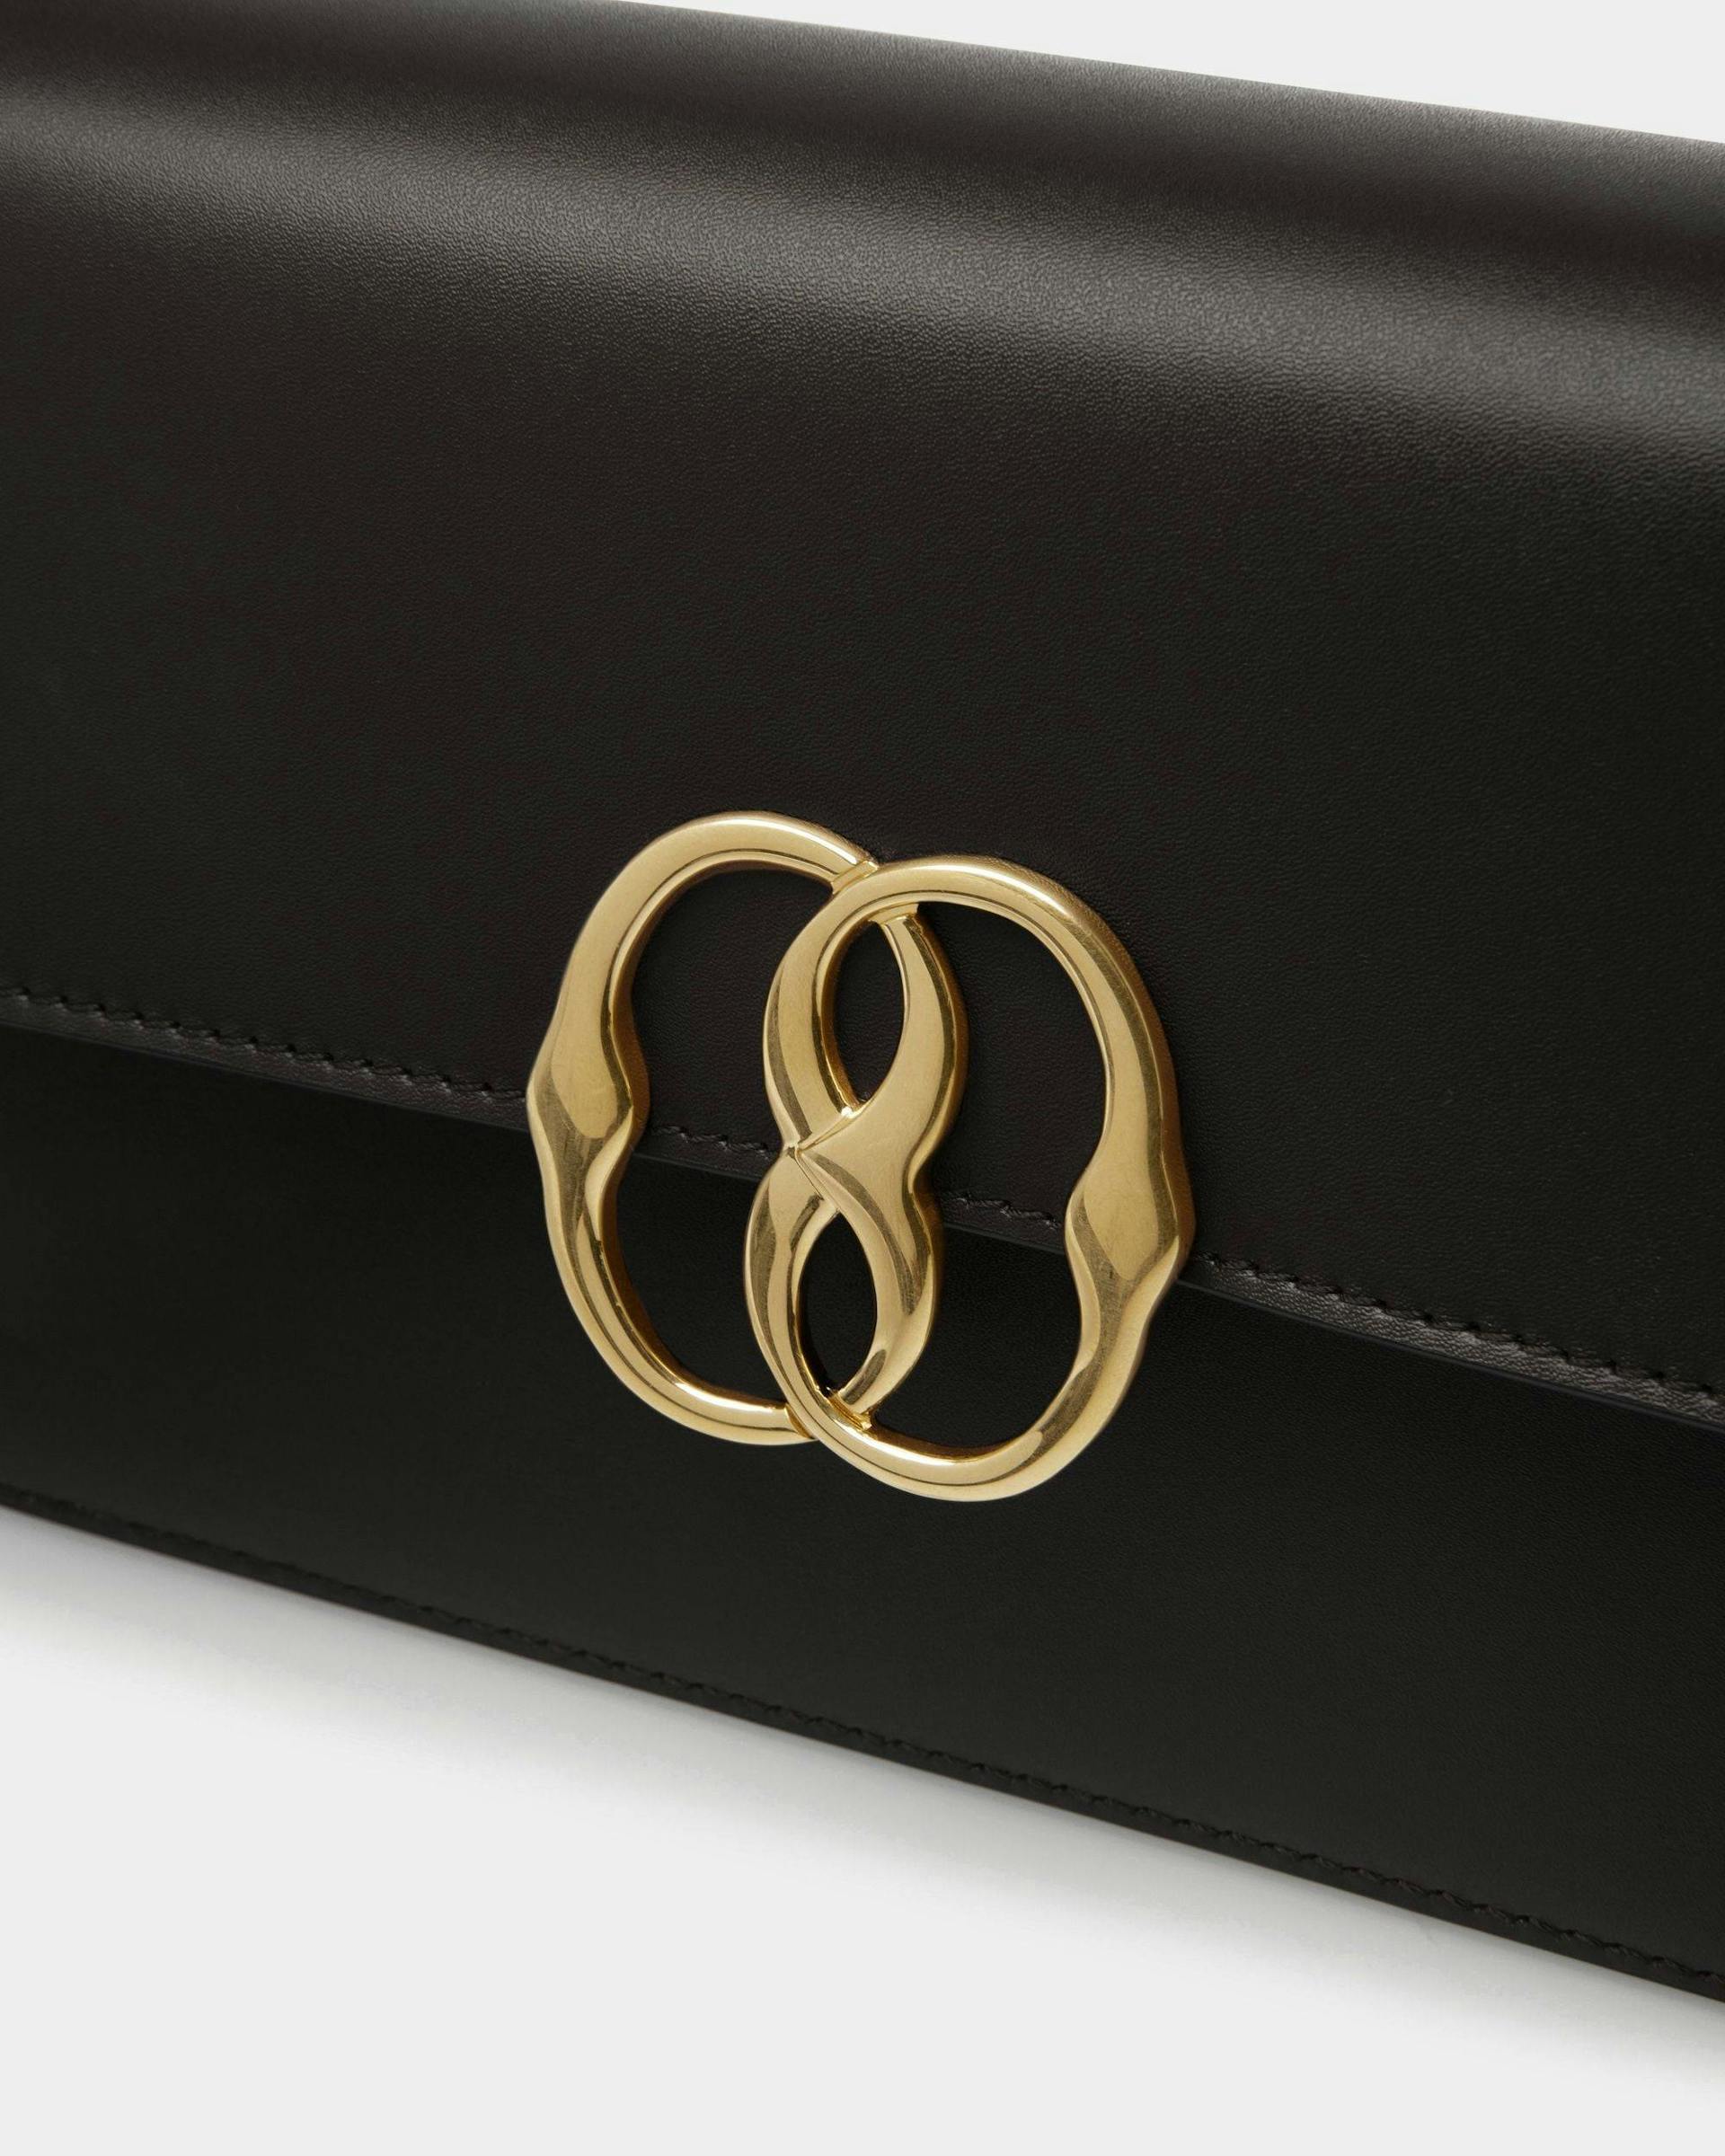 Women's Emblem Shoulder Bag In Black Leather | Bally | Still Life Detail